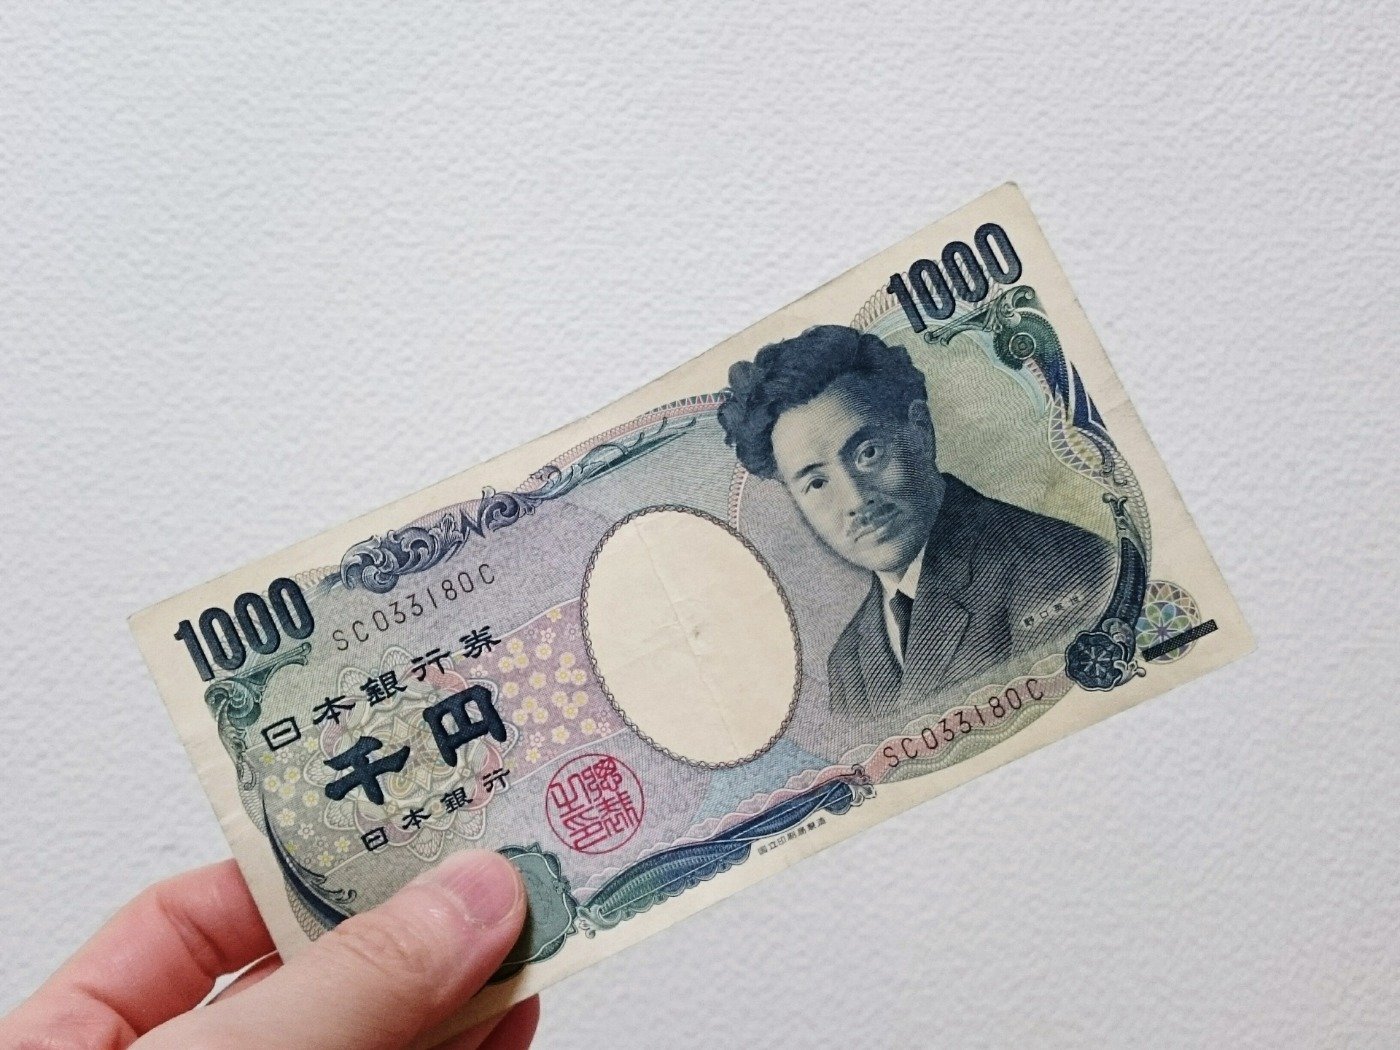 Yên Nhật không chỉ là đơn vị tiền tệ của Nhật Bản mà còn mang trong mình rất nhiều điều thú vị. Hãy đến với hình ảnh liên quan để tìm hiểu thêm về lịch sử, văn hóa và những ẩn số về đồng tiền yên này.